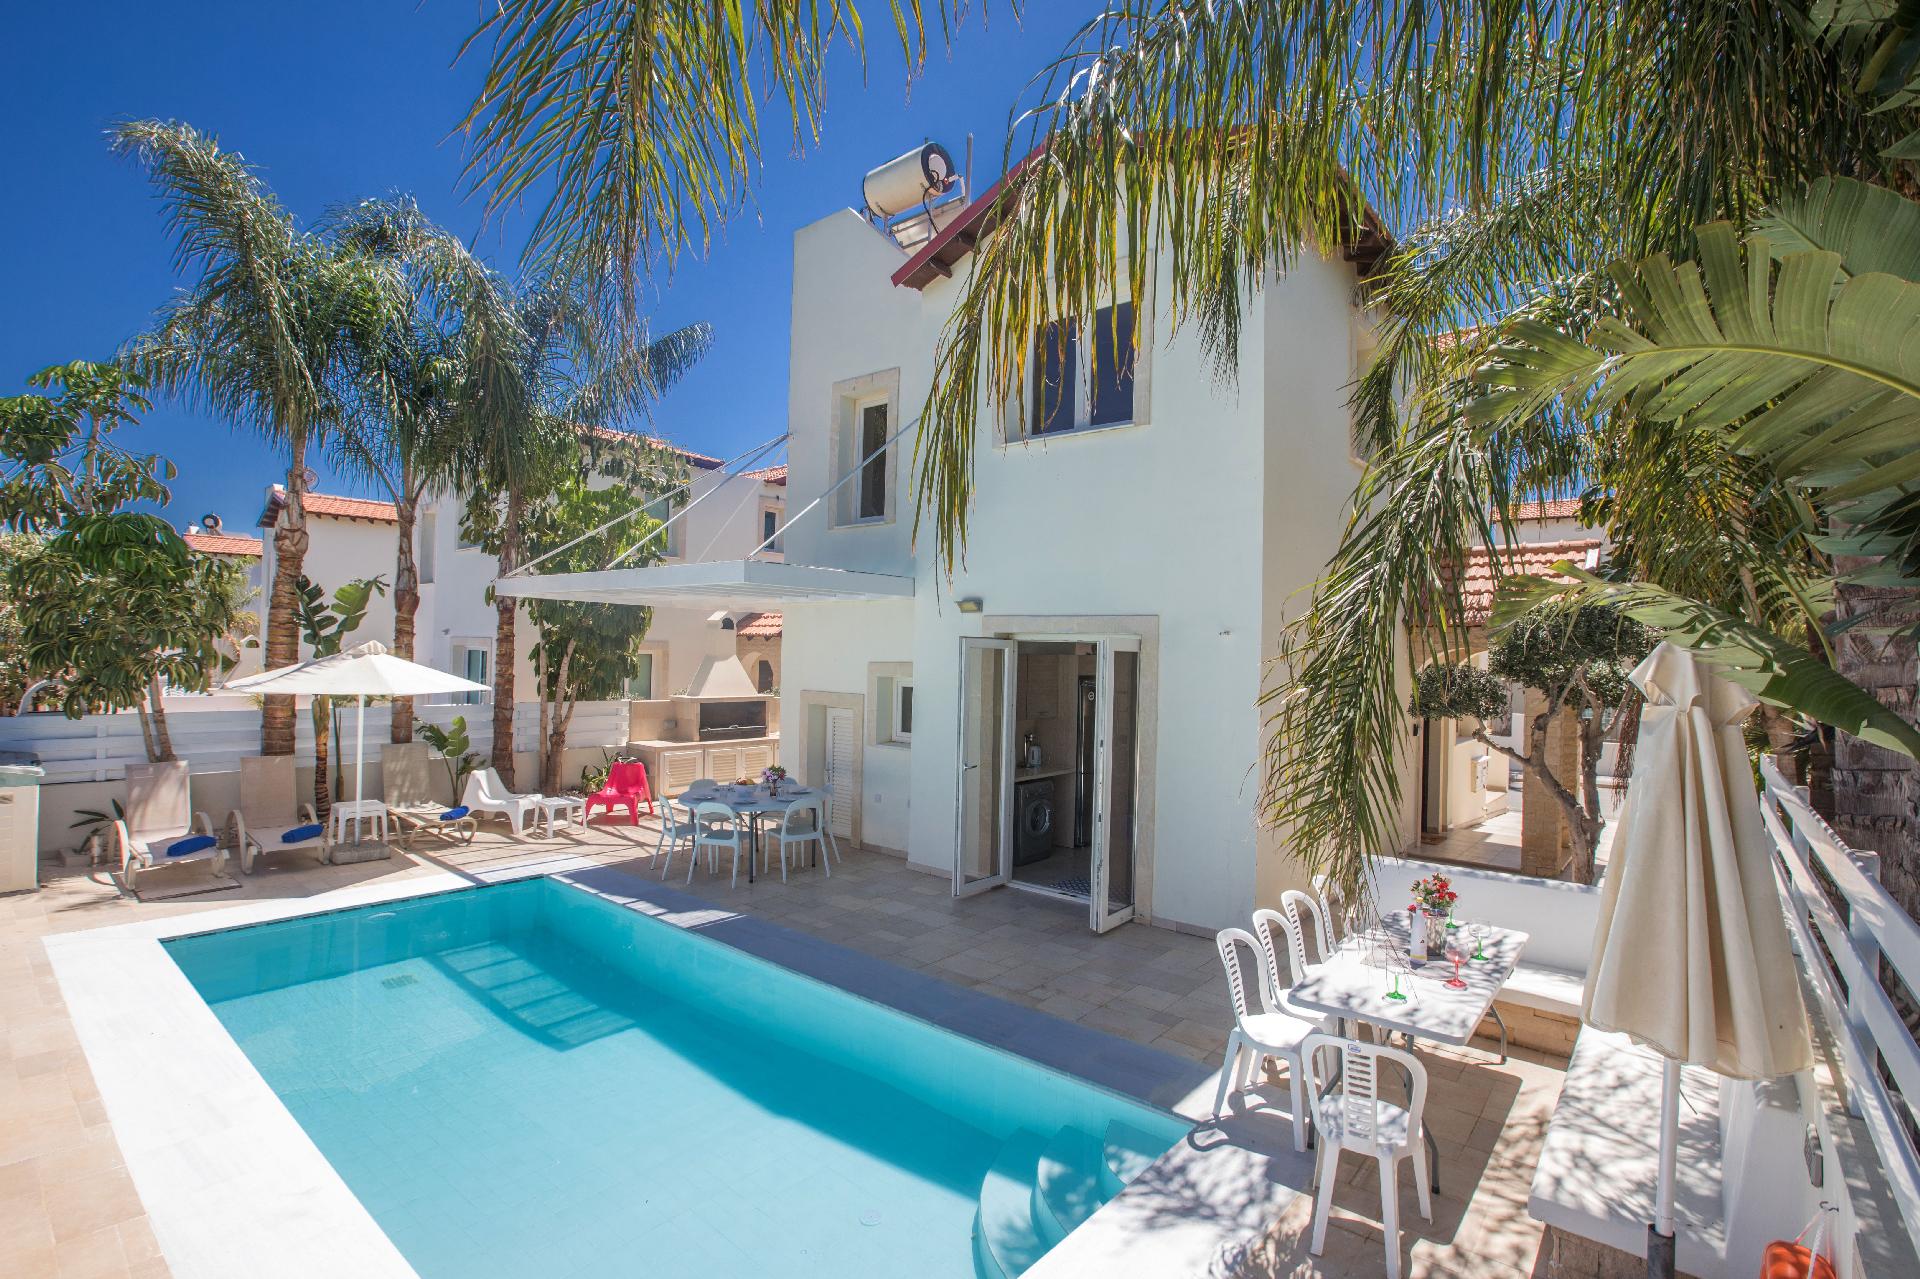 Ferienhaus mit Privatpool für 6 Personen ca.  Ferienhaus in Zypern